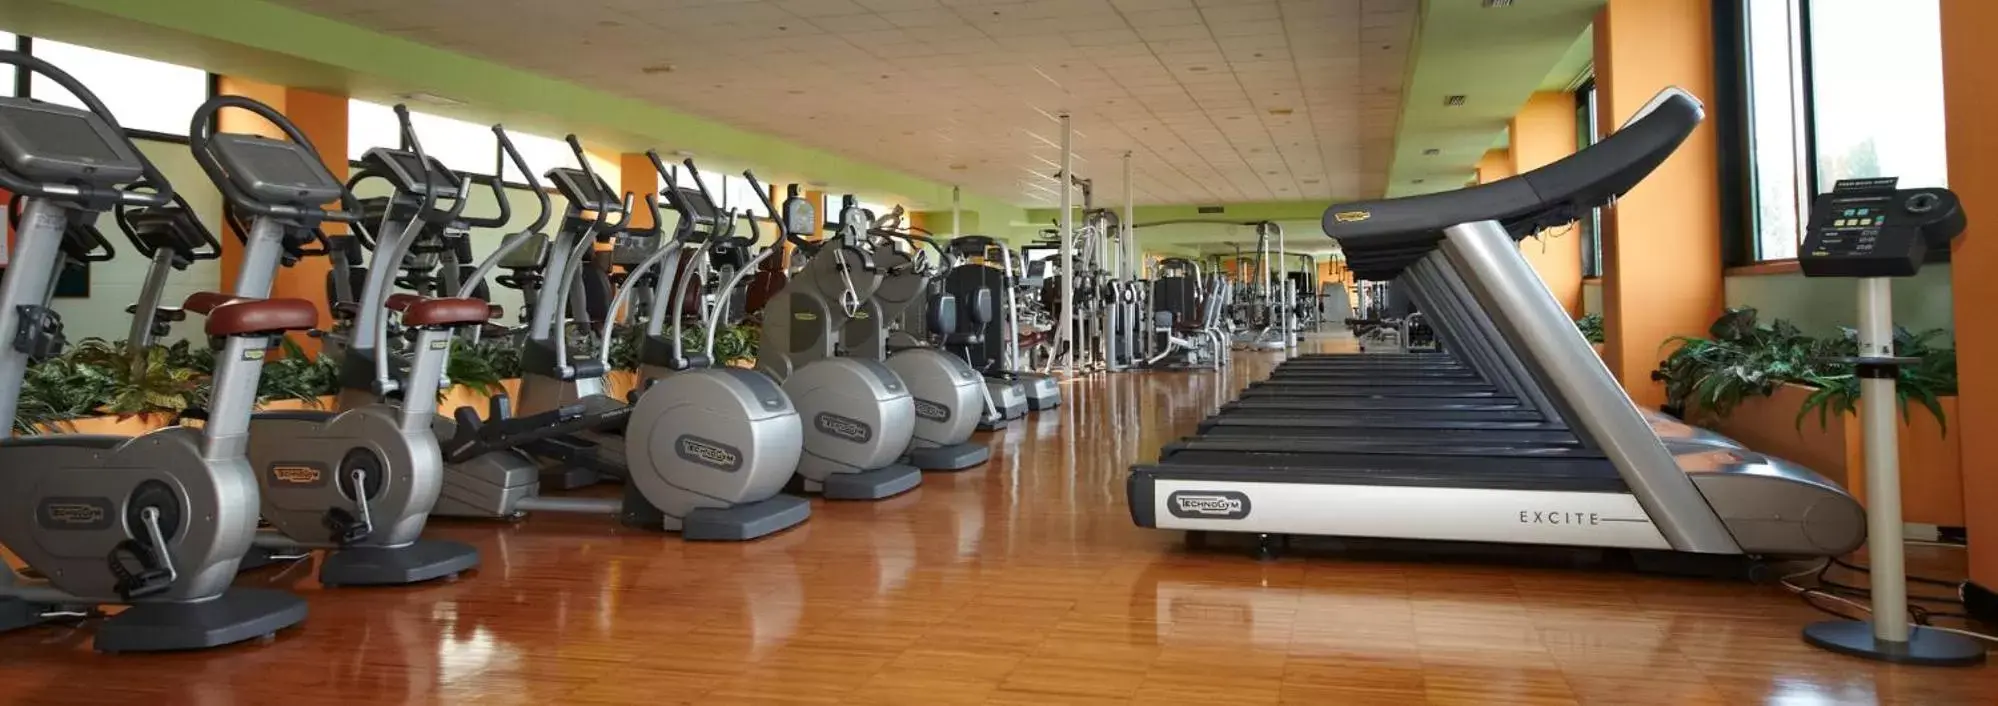 Fitness centre/facilities, Fitness Center/Facilities in GREEN GARDEN Resort - Smart Hotel